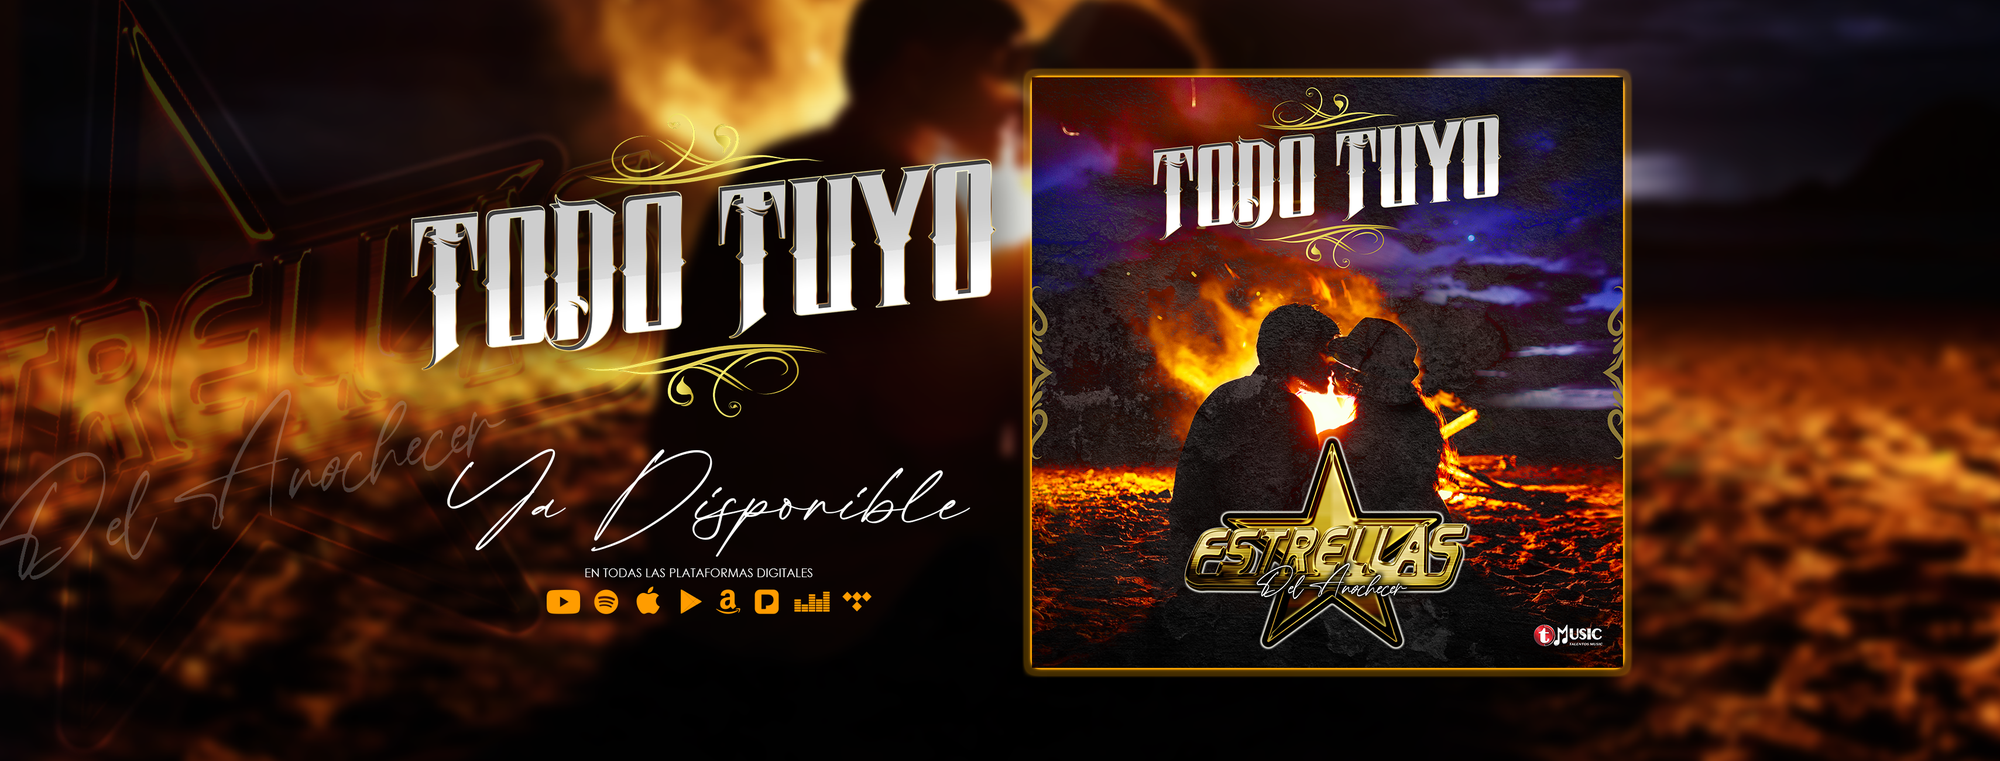 Talentos Music LLC presenta "Todo Tuyo"el nuevo sencillo de "Estrellas Del Anochecer" , ya disponible en YouTube y todas las Plataformas Digitales